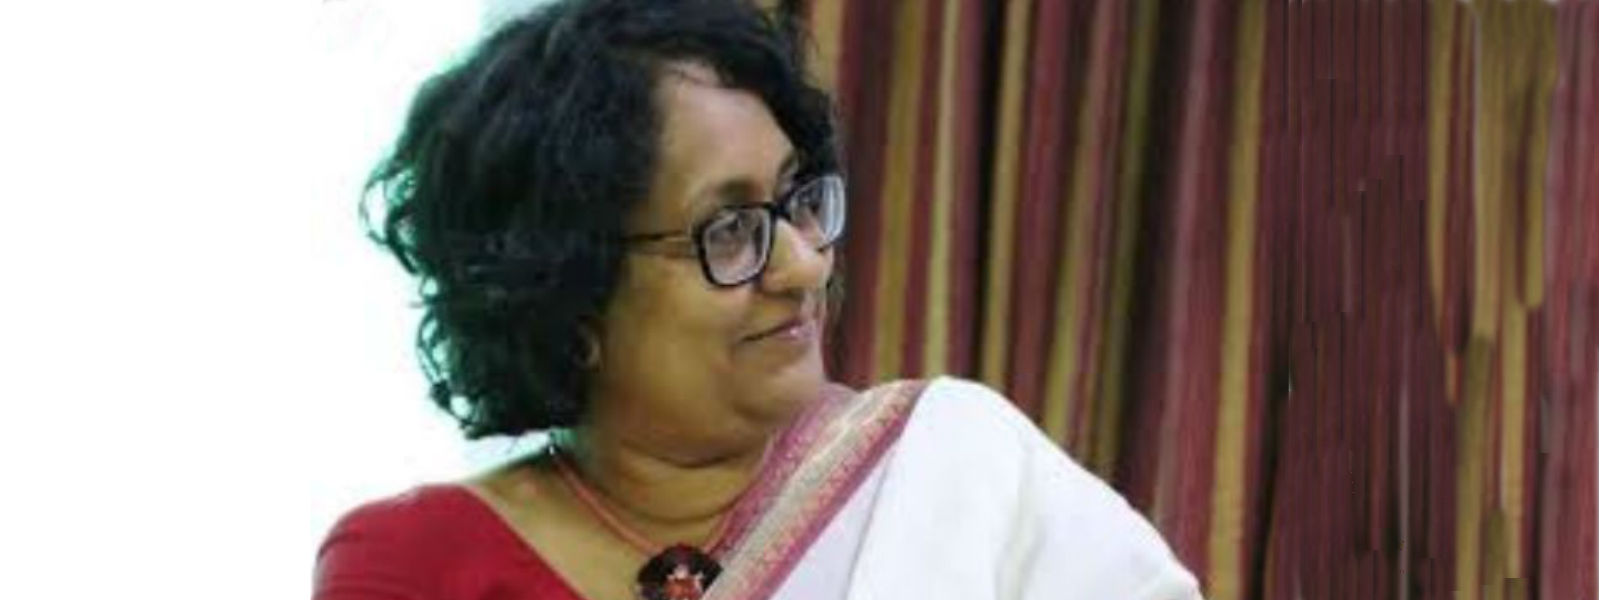 தேசிய மக்கள் சக்தியின் தேசியப் பட்டியல் உறுப்பினராக ஹரினி அமரசூரிய